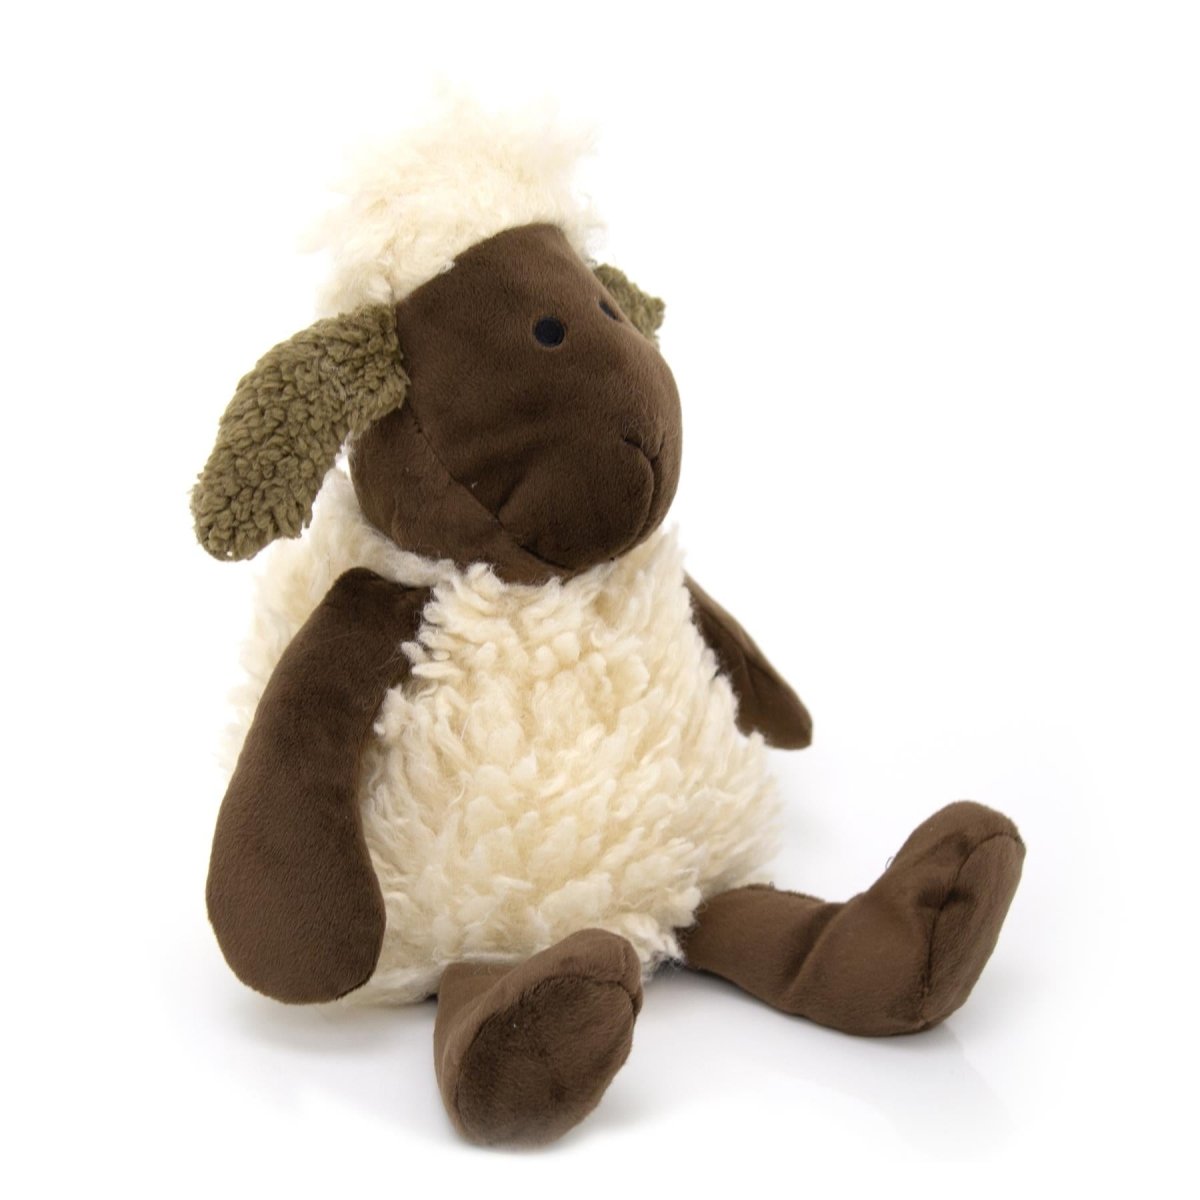 Cute Woolly Sheep Fabric Doorstop - Novelty Animal Door Stop - Brown Ear - Doorstop